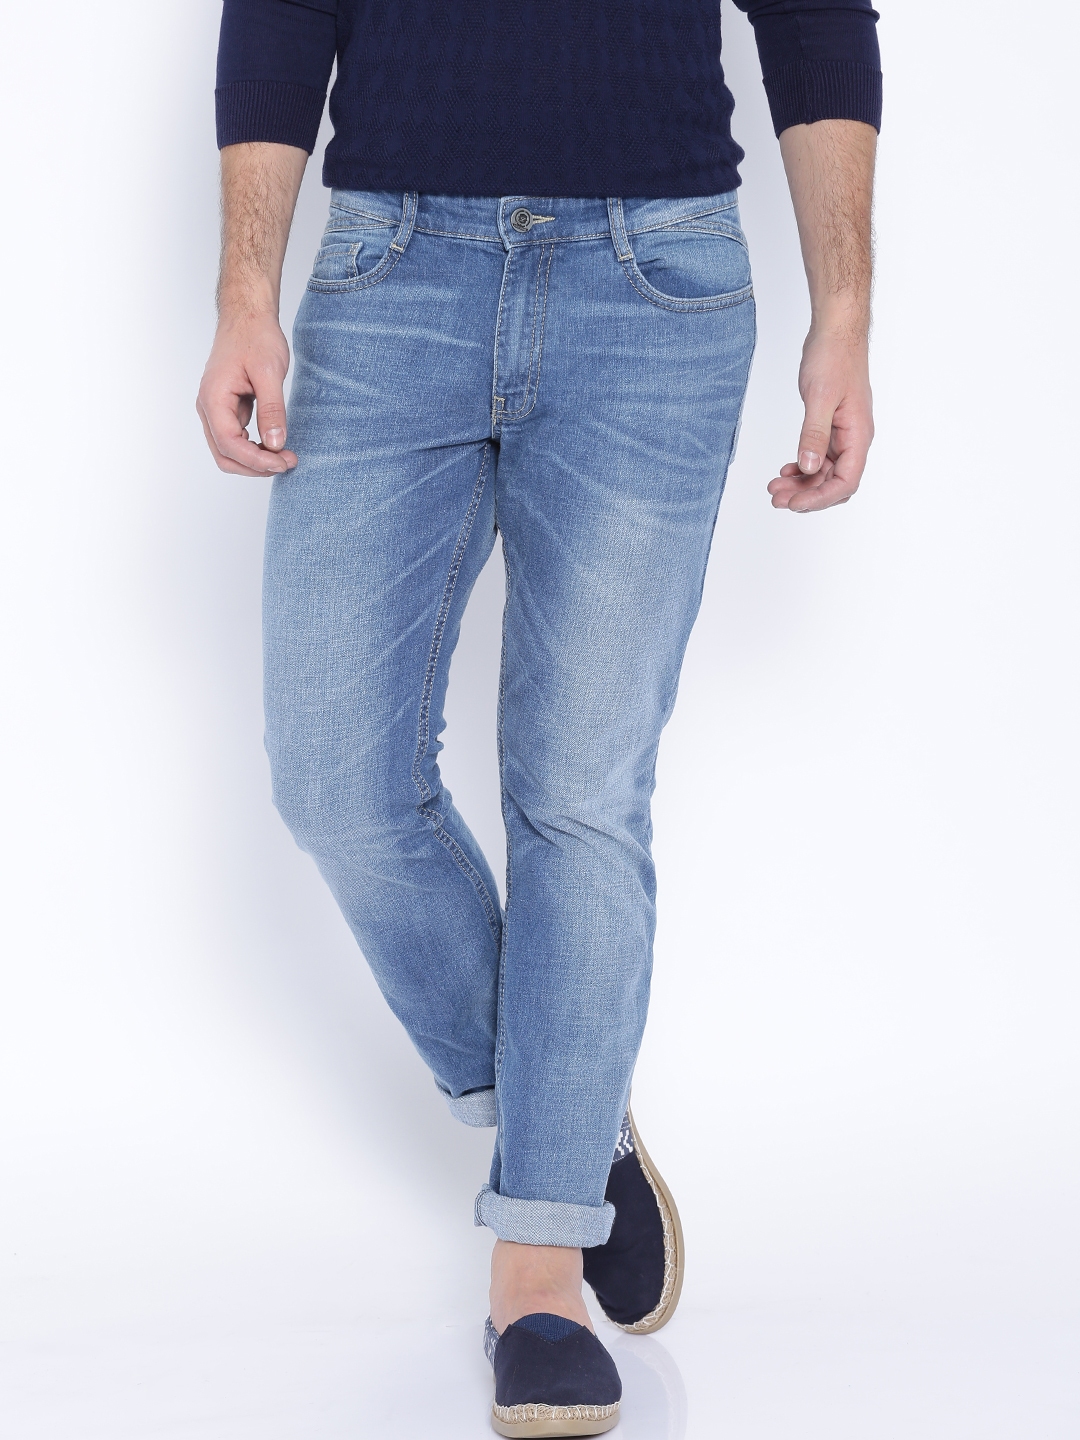 Buy Locomotive Blue Super Slim Fit Jeans - Jeans for Men 1048529 | Myntra